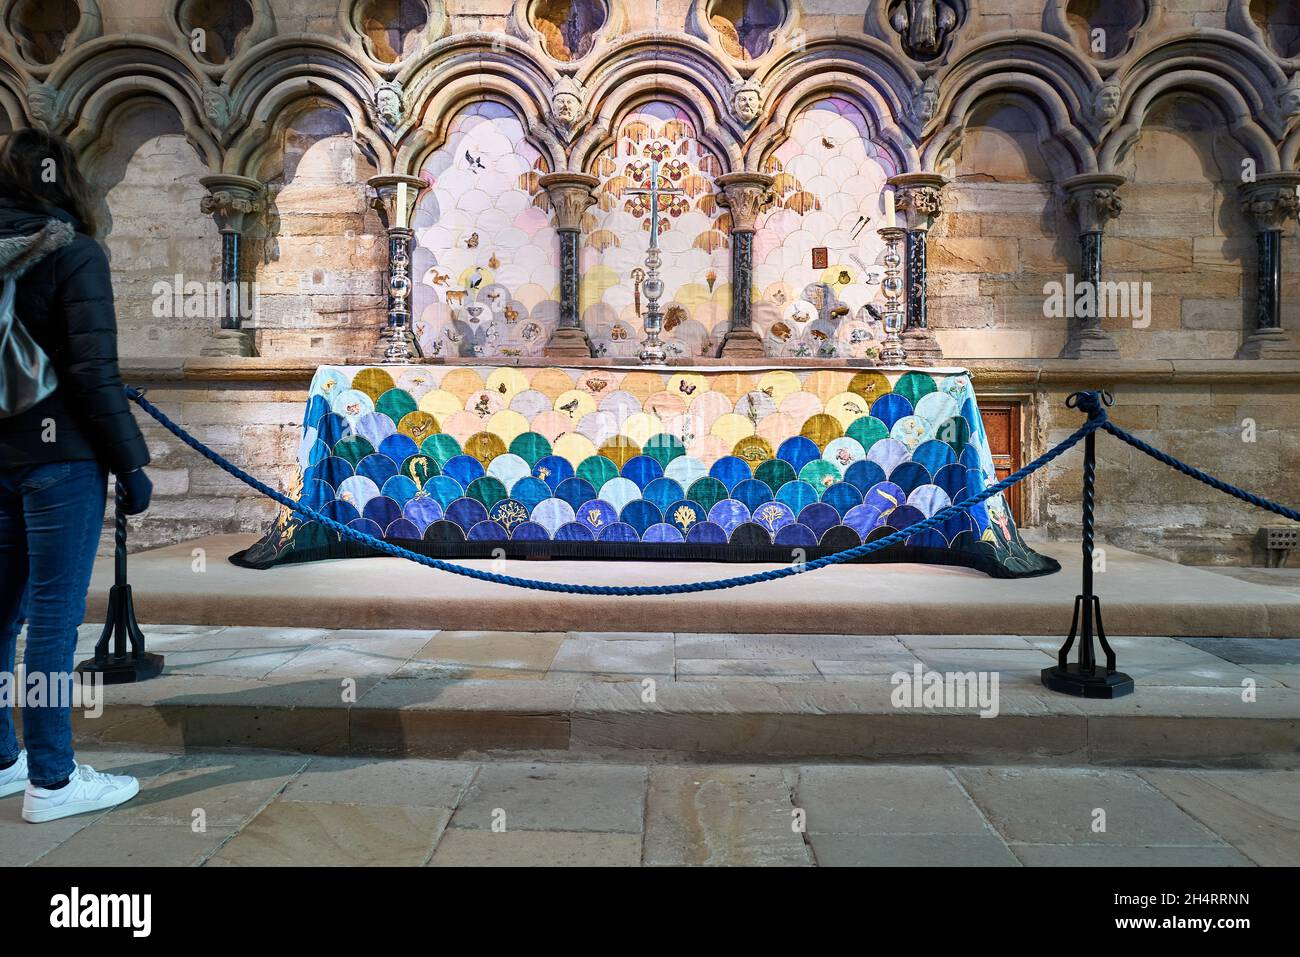 Stirnseite und Altar in der Kapelle der neun Altäre in der Kathedrale von Durham, England. Stockfoto